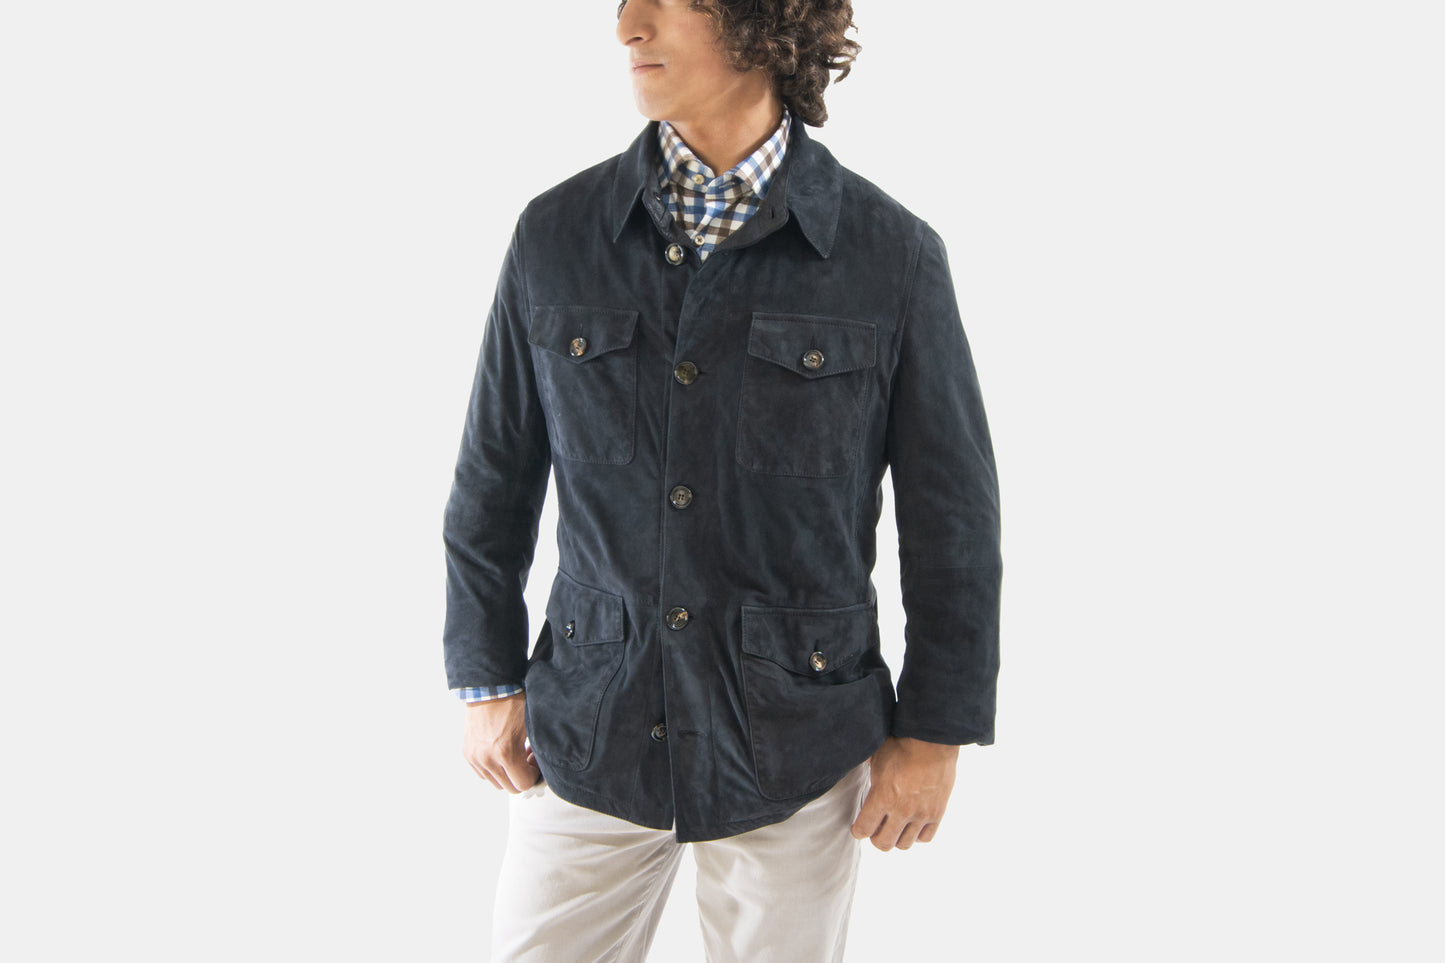 khakis of Carmel - navy suede jacket